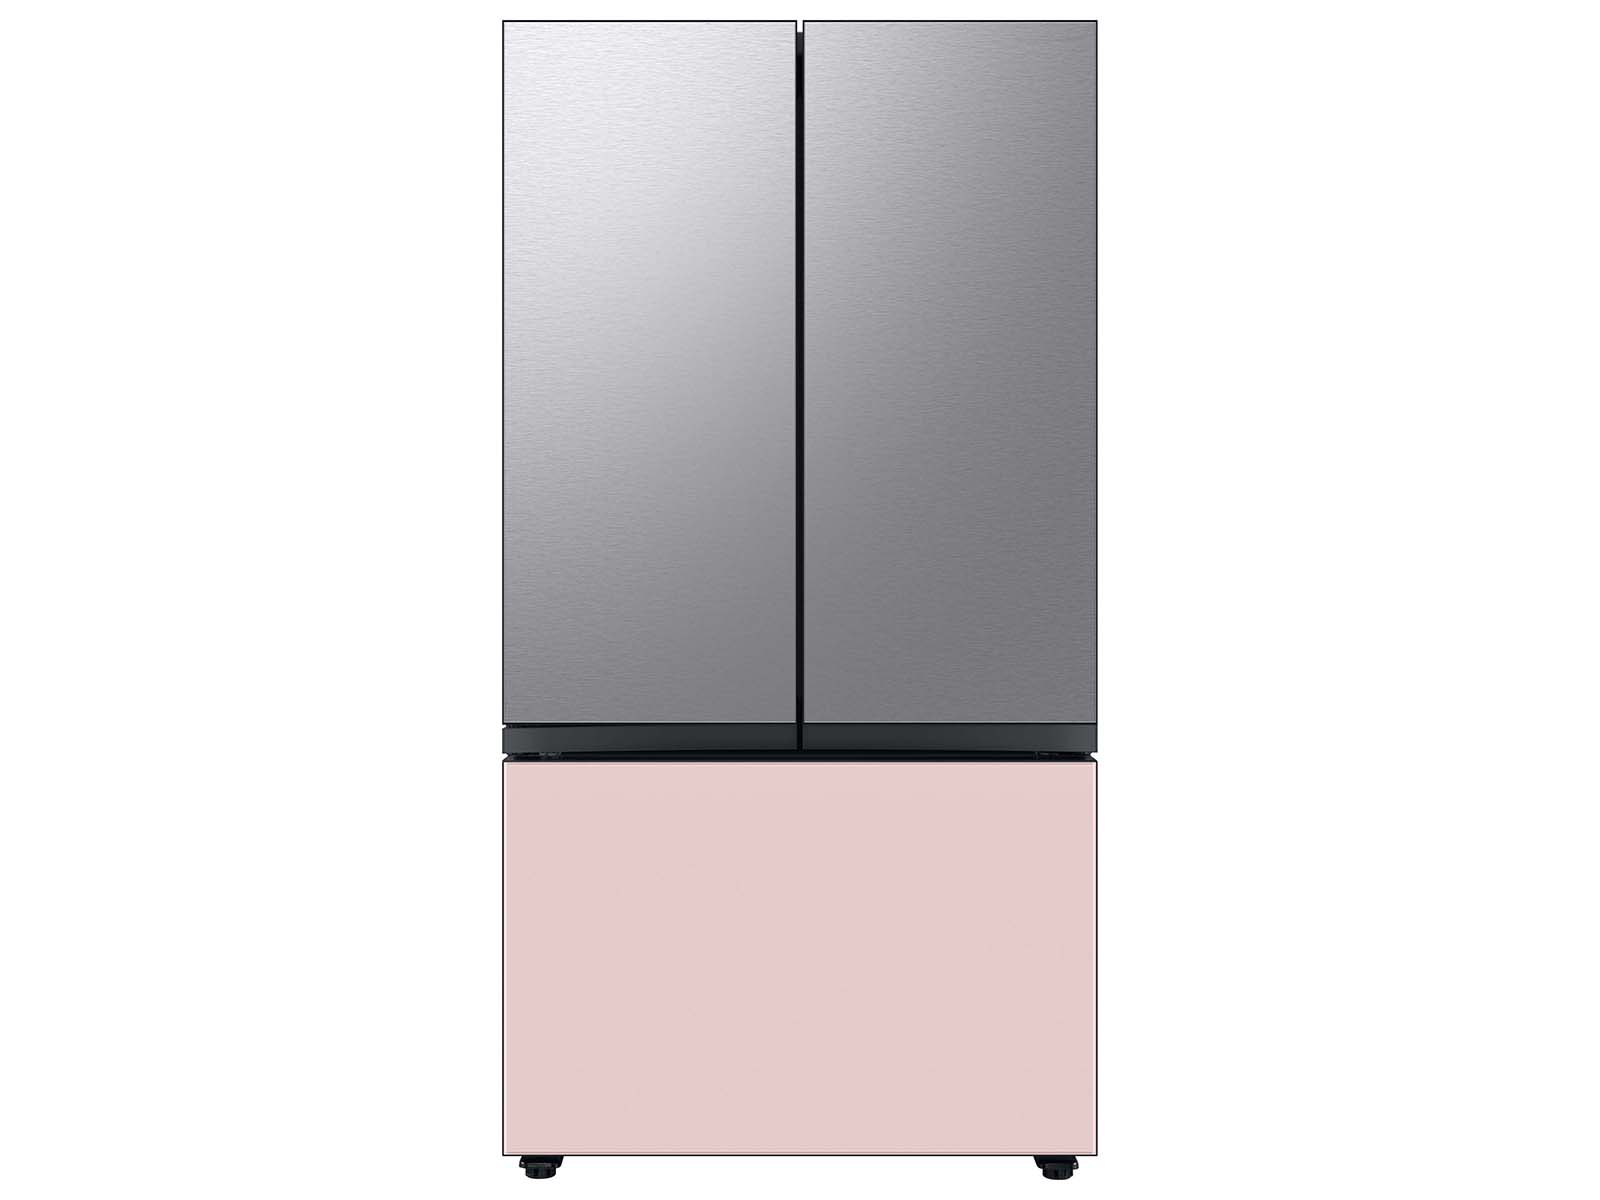 Thumbnail image of Bespoke 3-Door French Door Refrigerator Panel in Stainless Steel - Top Panel